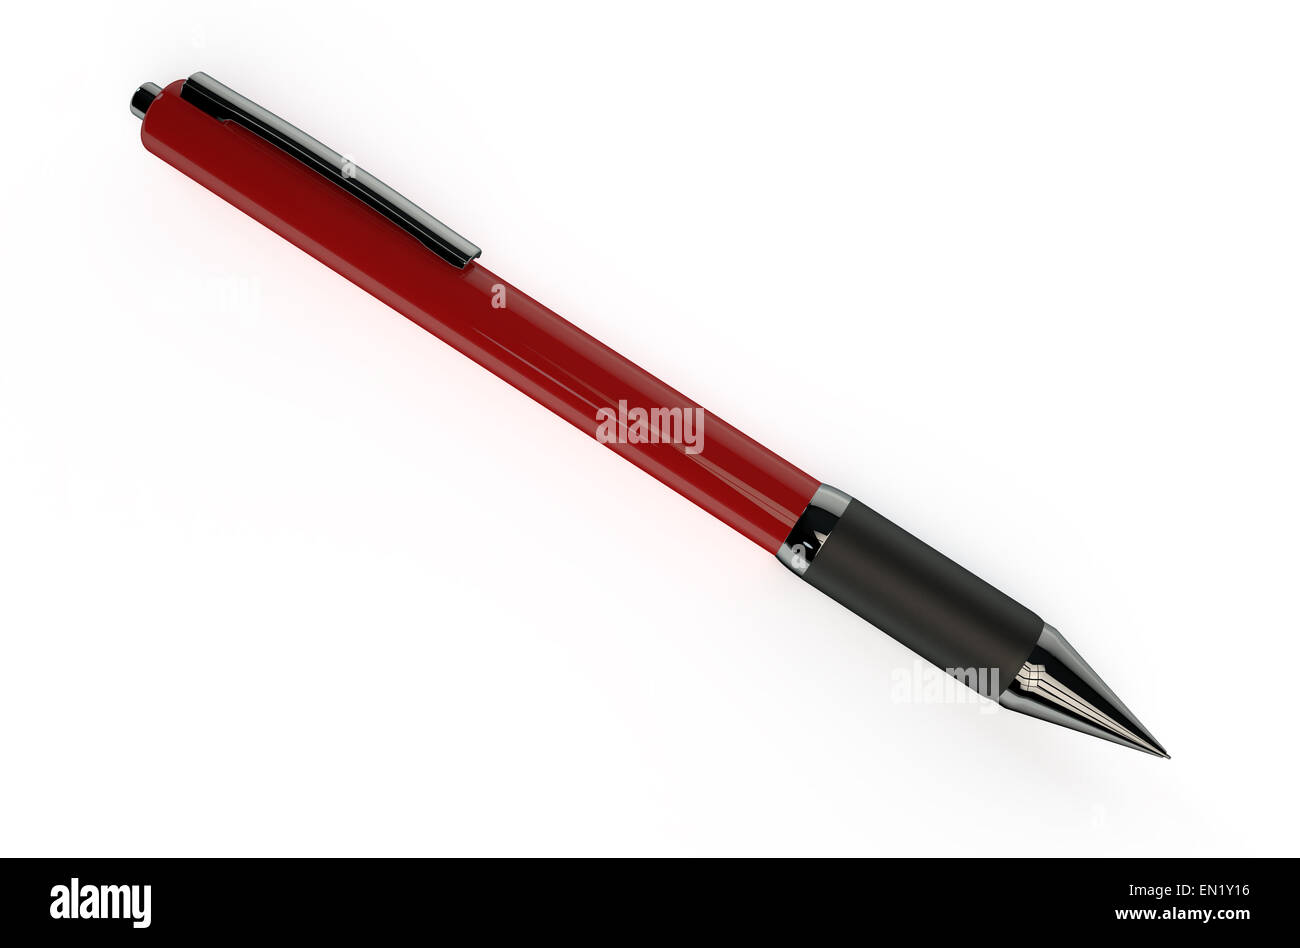 Penna e inchiostro rosso immagini e fotografie stock ad alta risoluzione -  Alamy